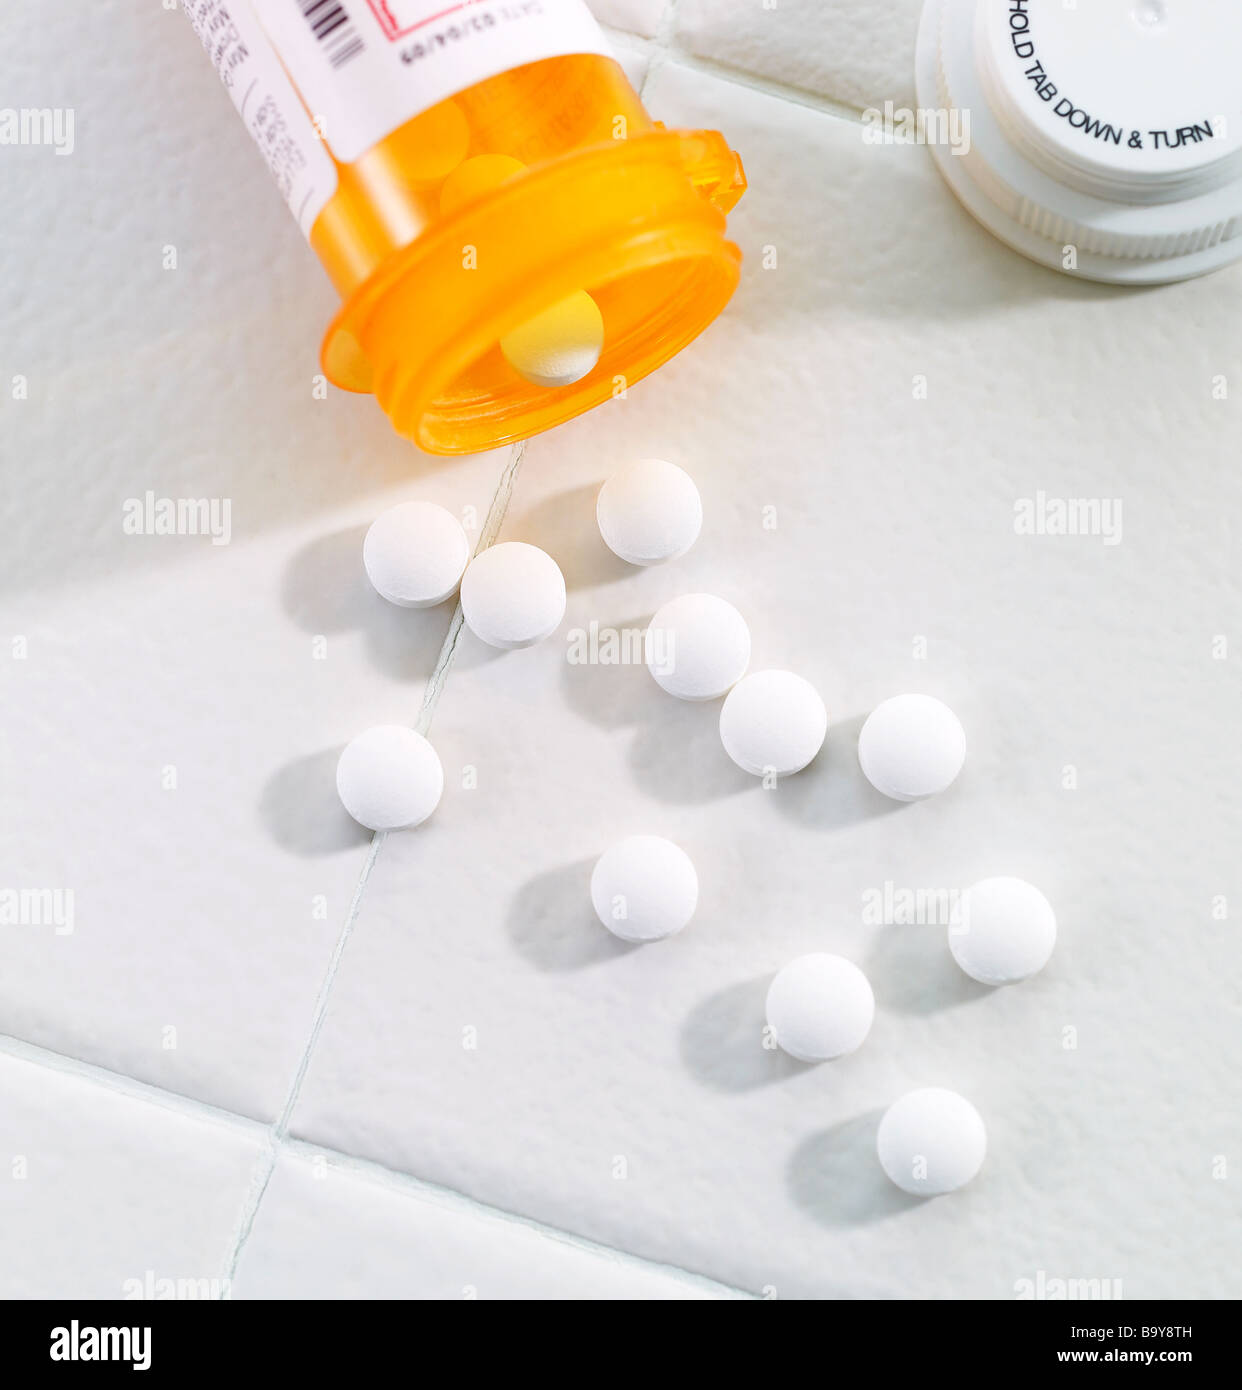 Bouteille de pilules avec des comprimés à renversé sur une surface de carreaux Banque D'Images